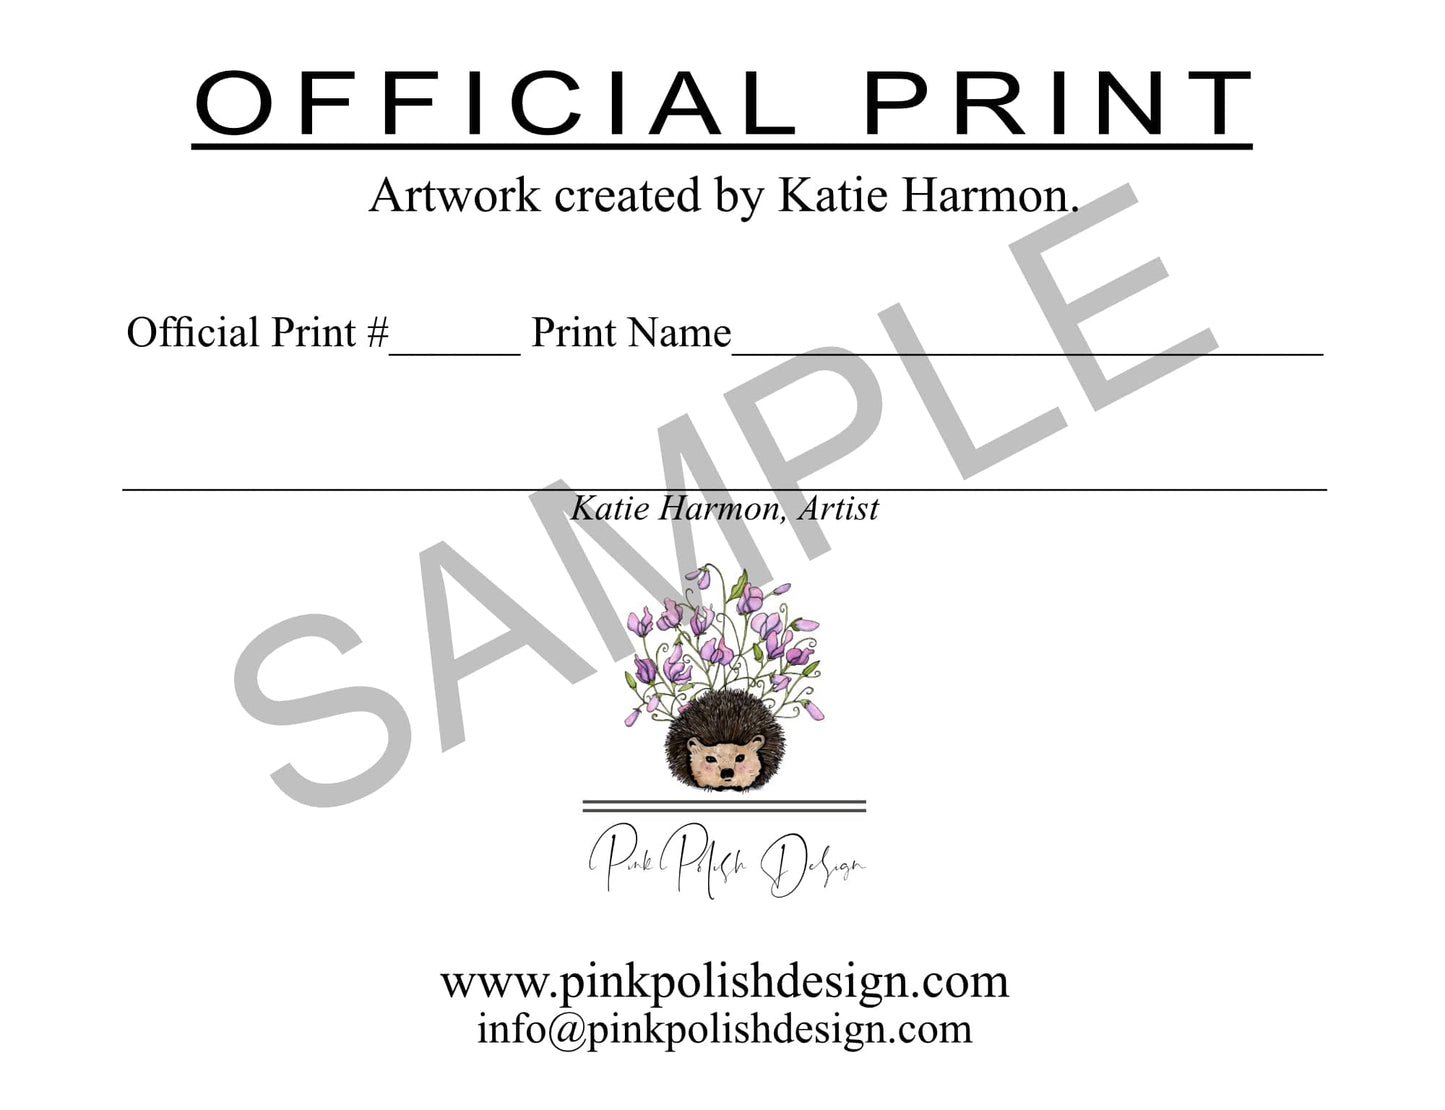 PinkPolish Design Art Prints "Hi There" Watercolor Painting: Art Print